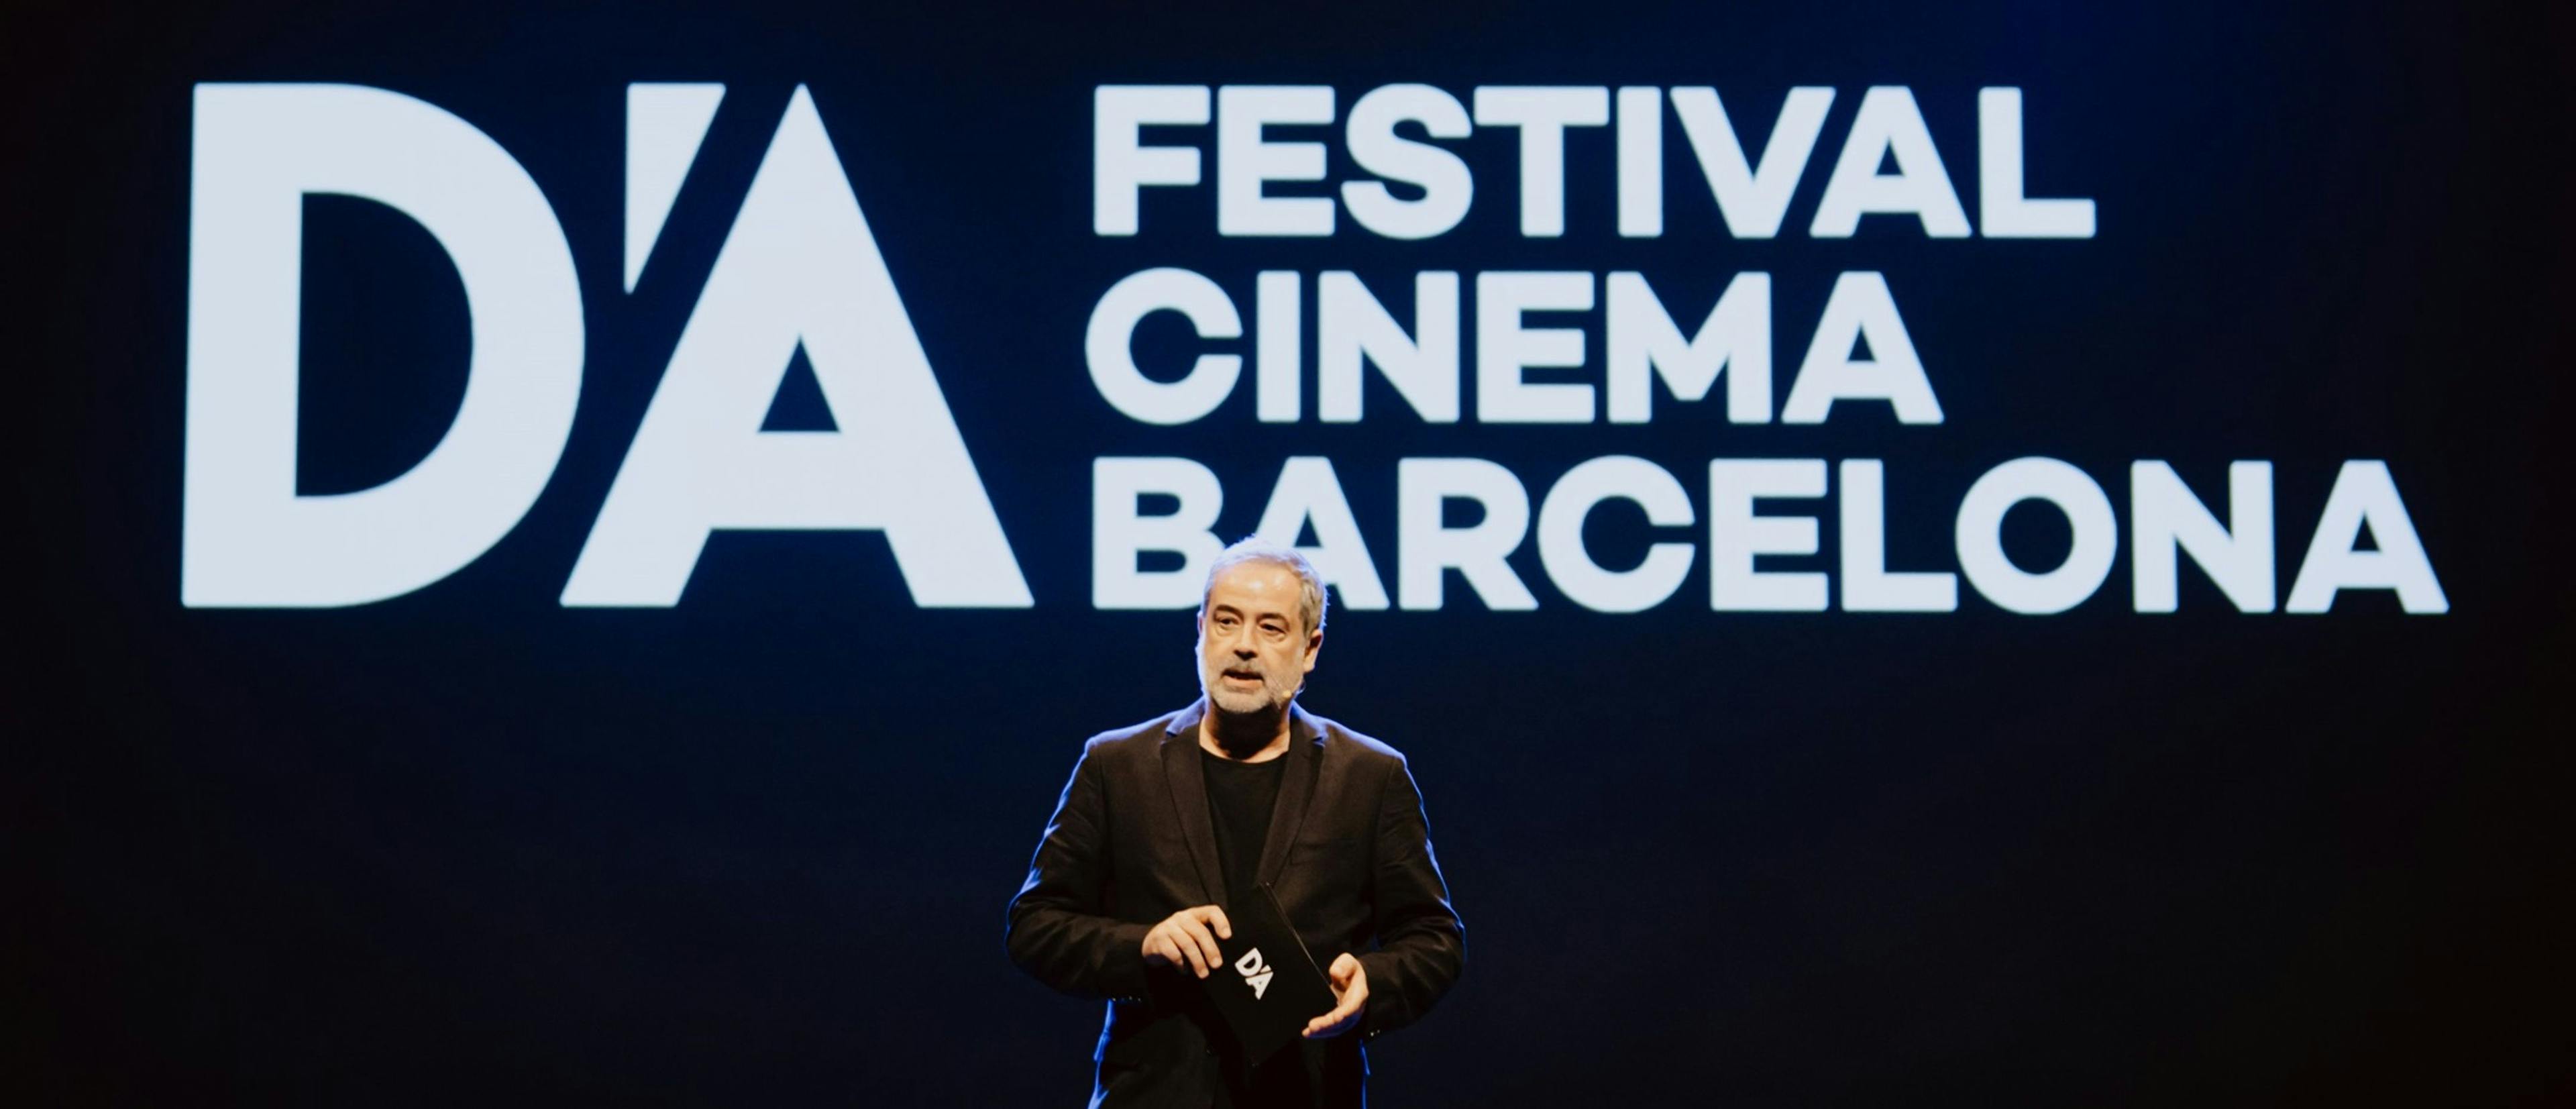 Carlos R. Ríos, director del D'A Festival Cinema Barcelona, en la gala de inauguración de la edición 2024